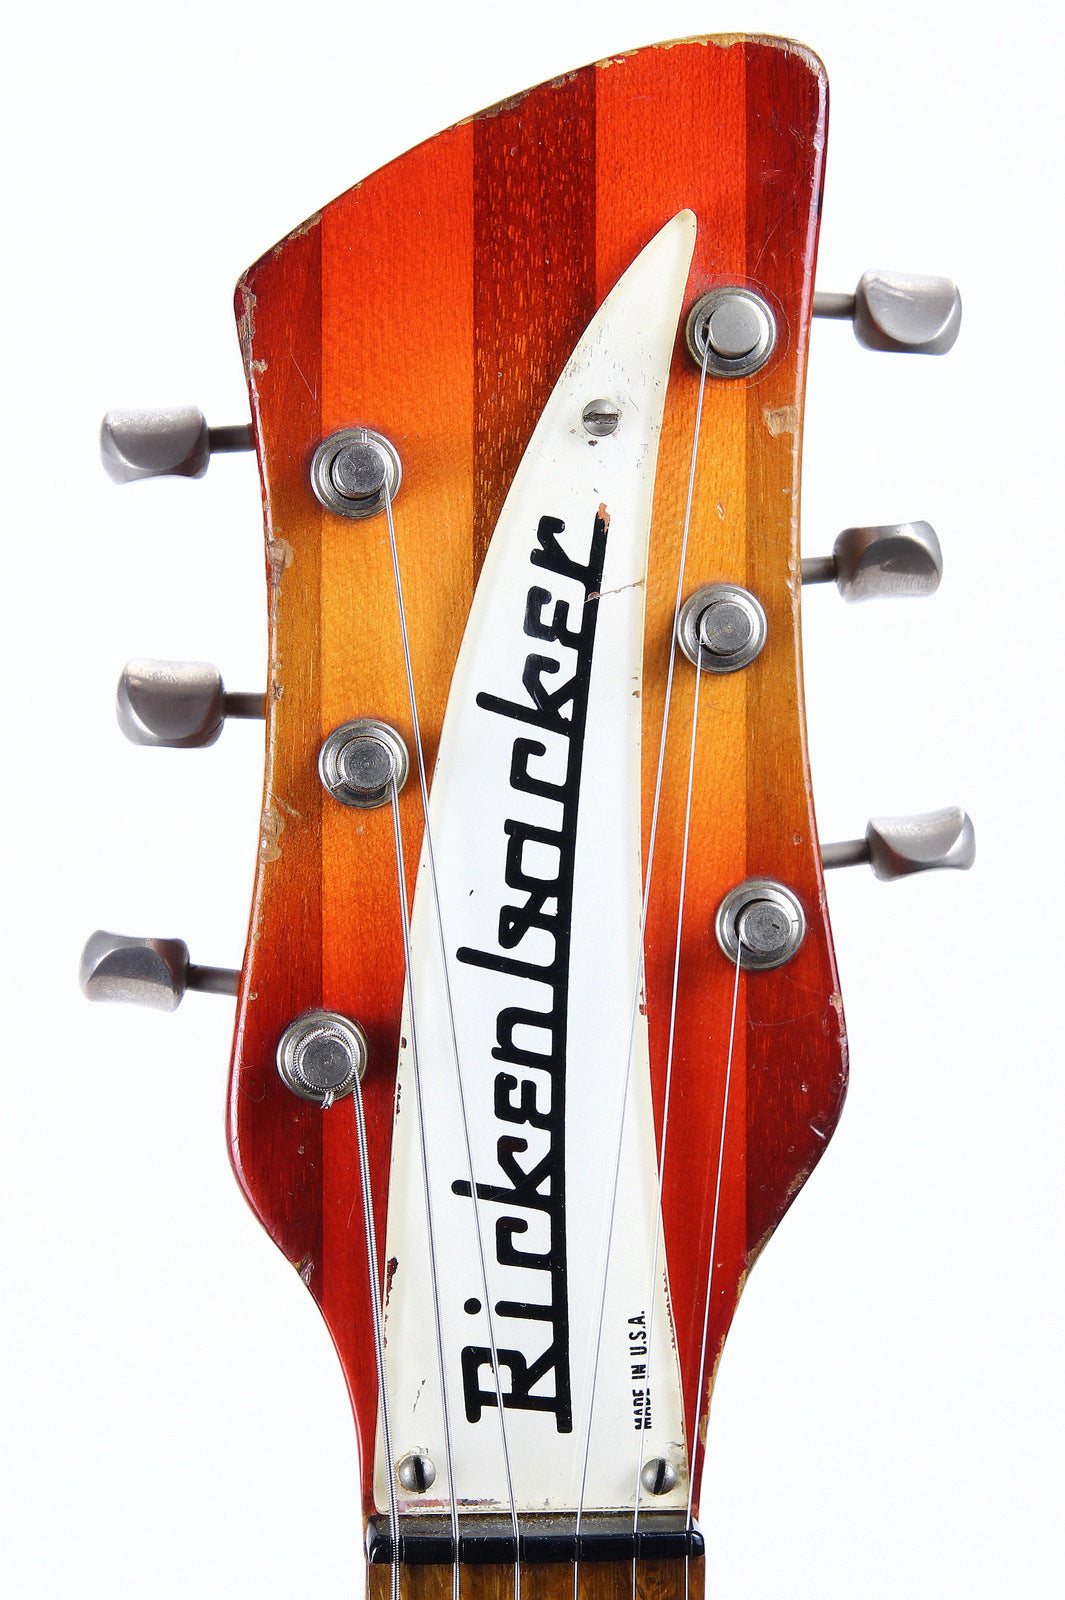 Rickenbacker headstock with logo